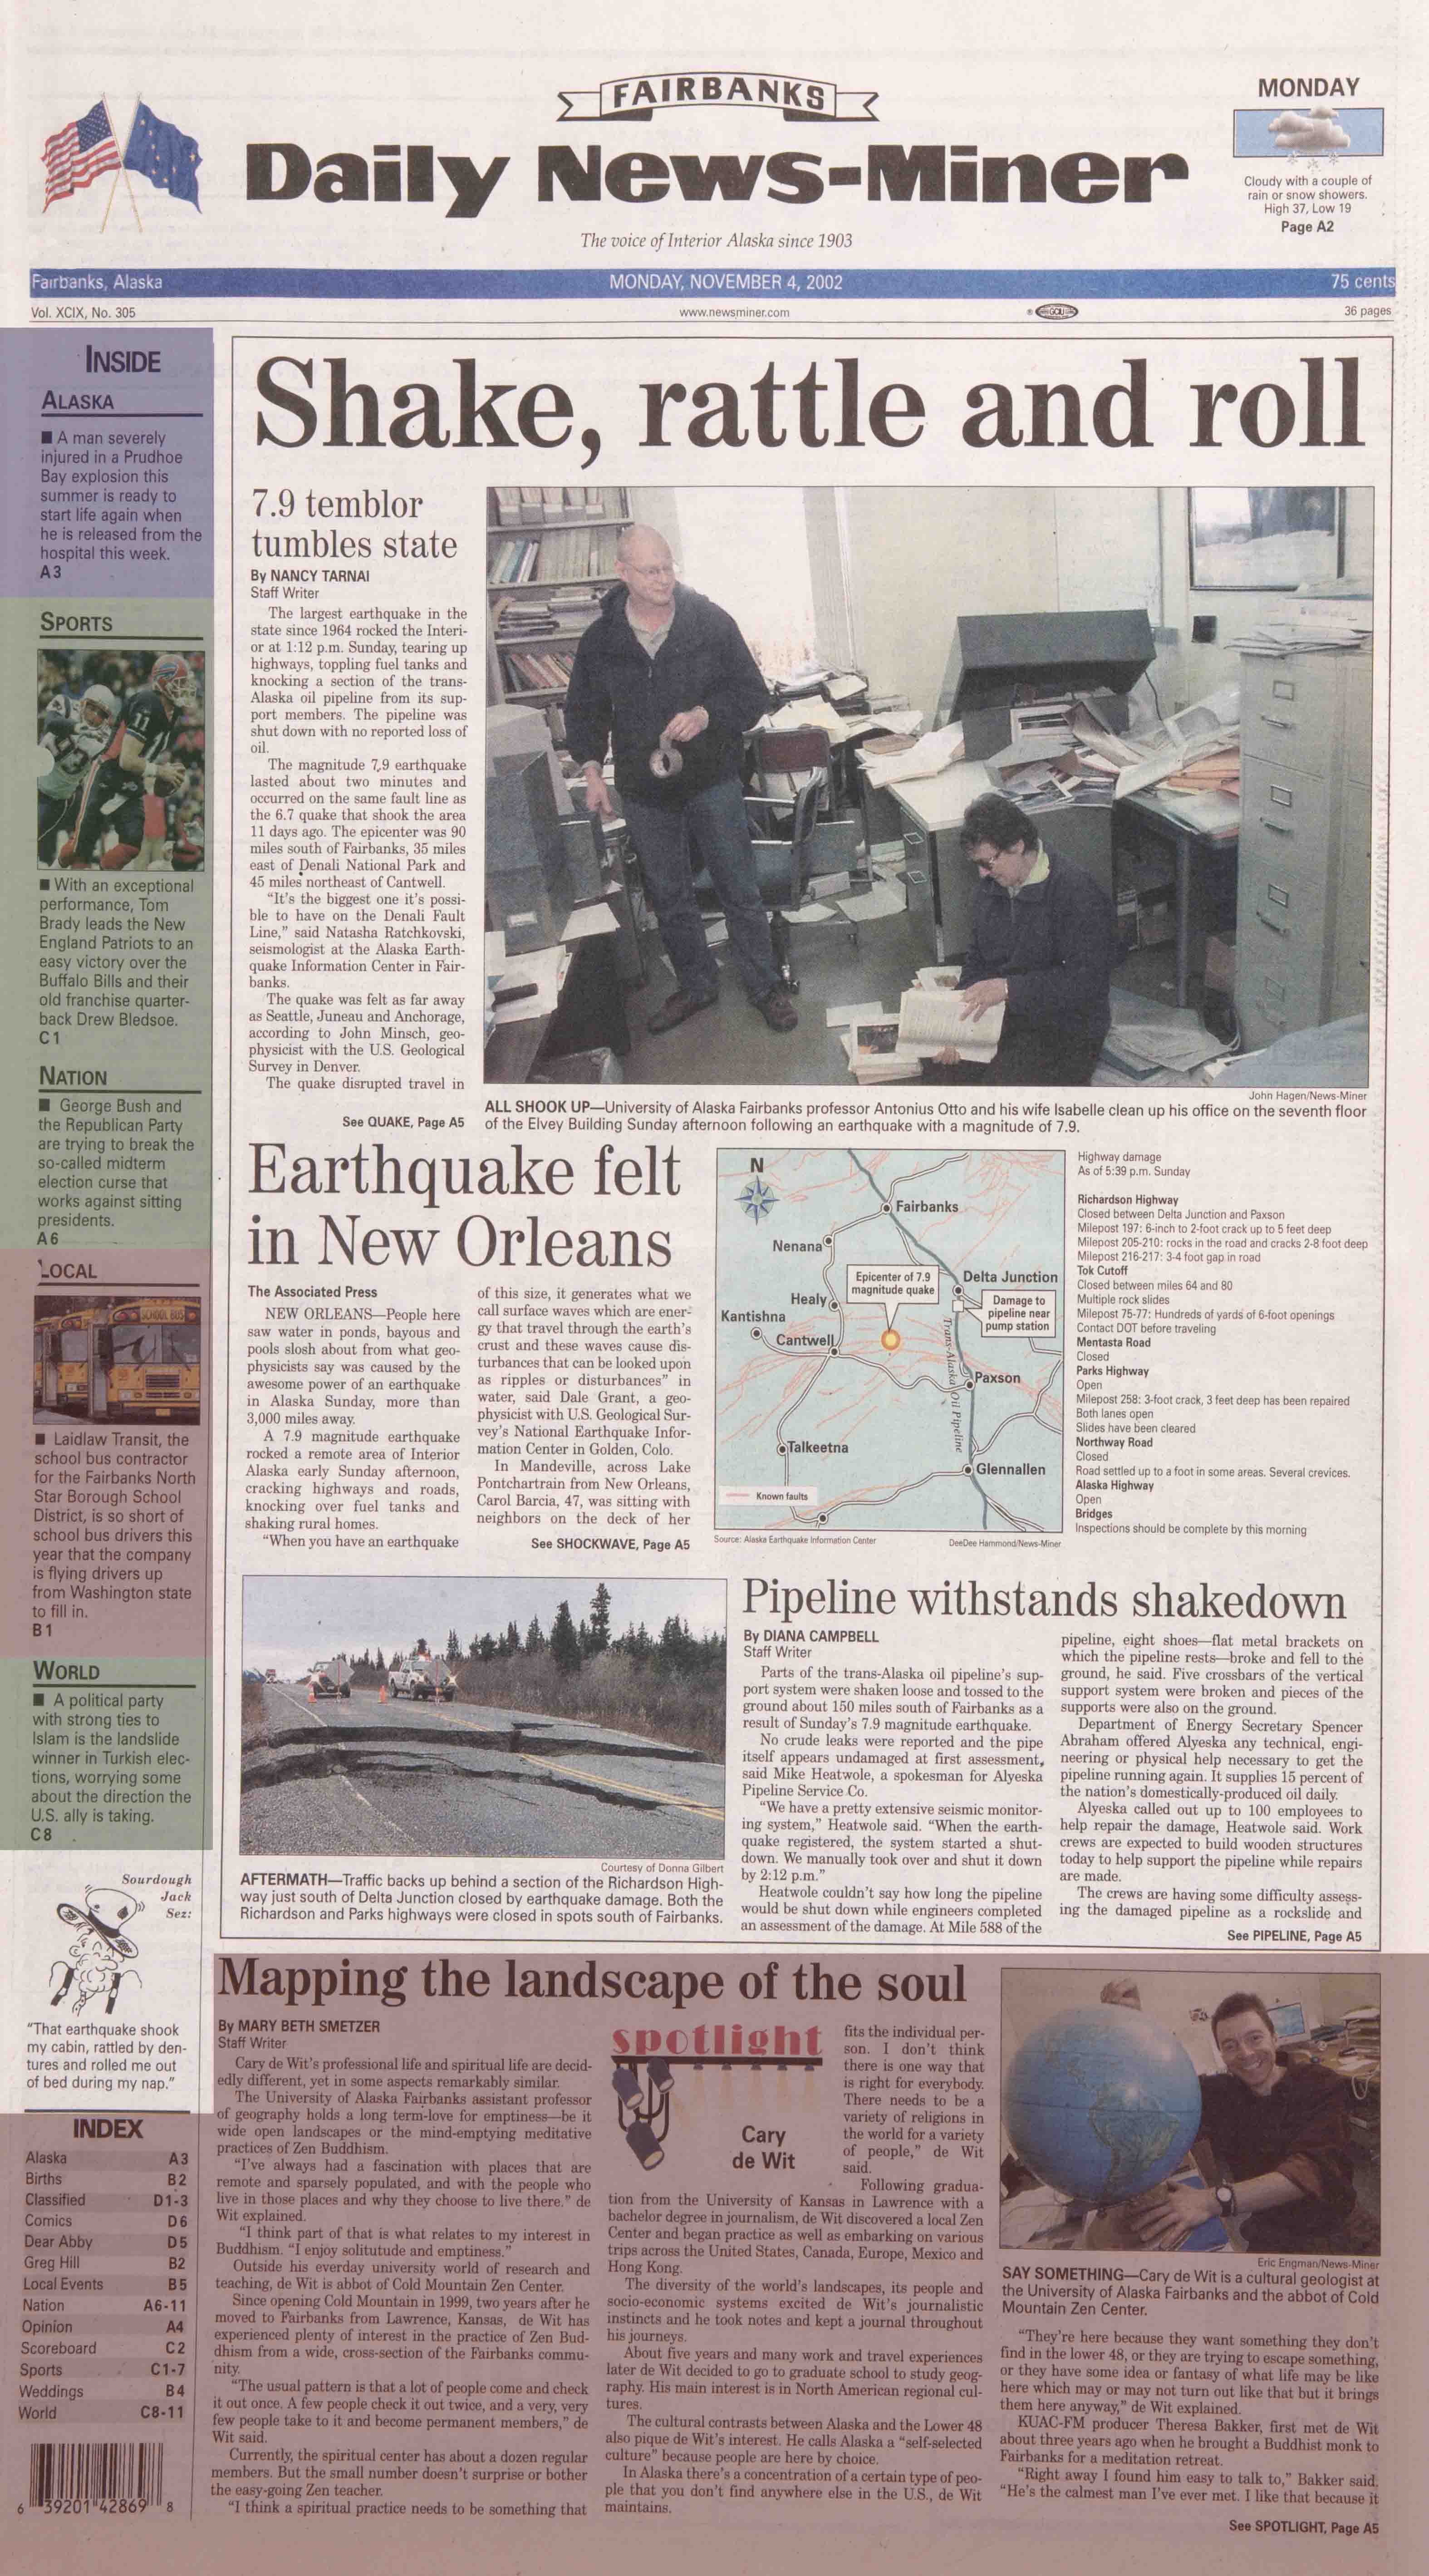 2002 November 4, Fairbanks Daily News-Miner (pg 1)